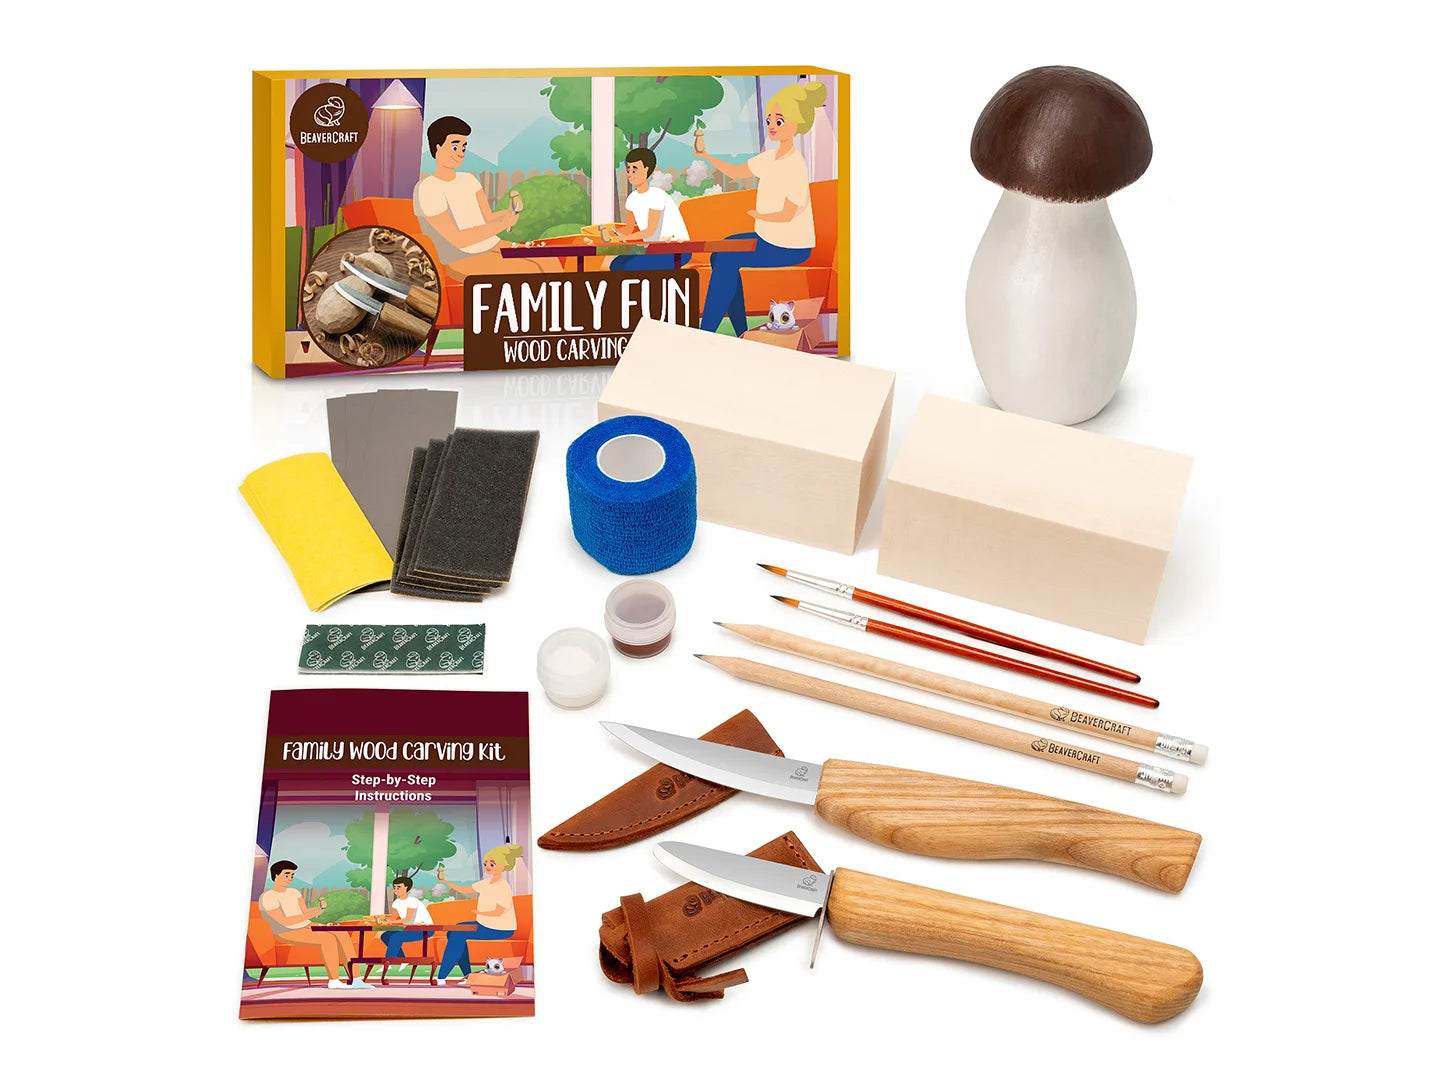  BeaverCraft Wood Carving Kit for Kids & Beginner DIY08 - Wood Whittling  Kit for Kids Woodworking Starter Kit Hobby Kits for Boys Wood Crafts  Projects DIY Gifts, Carving Set Whittling Knife